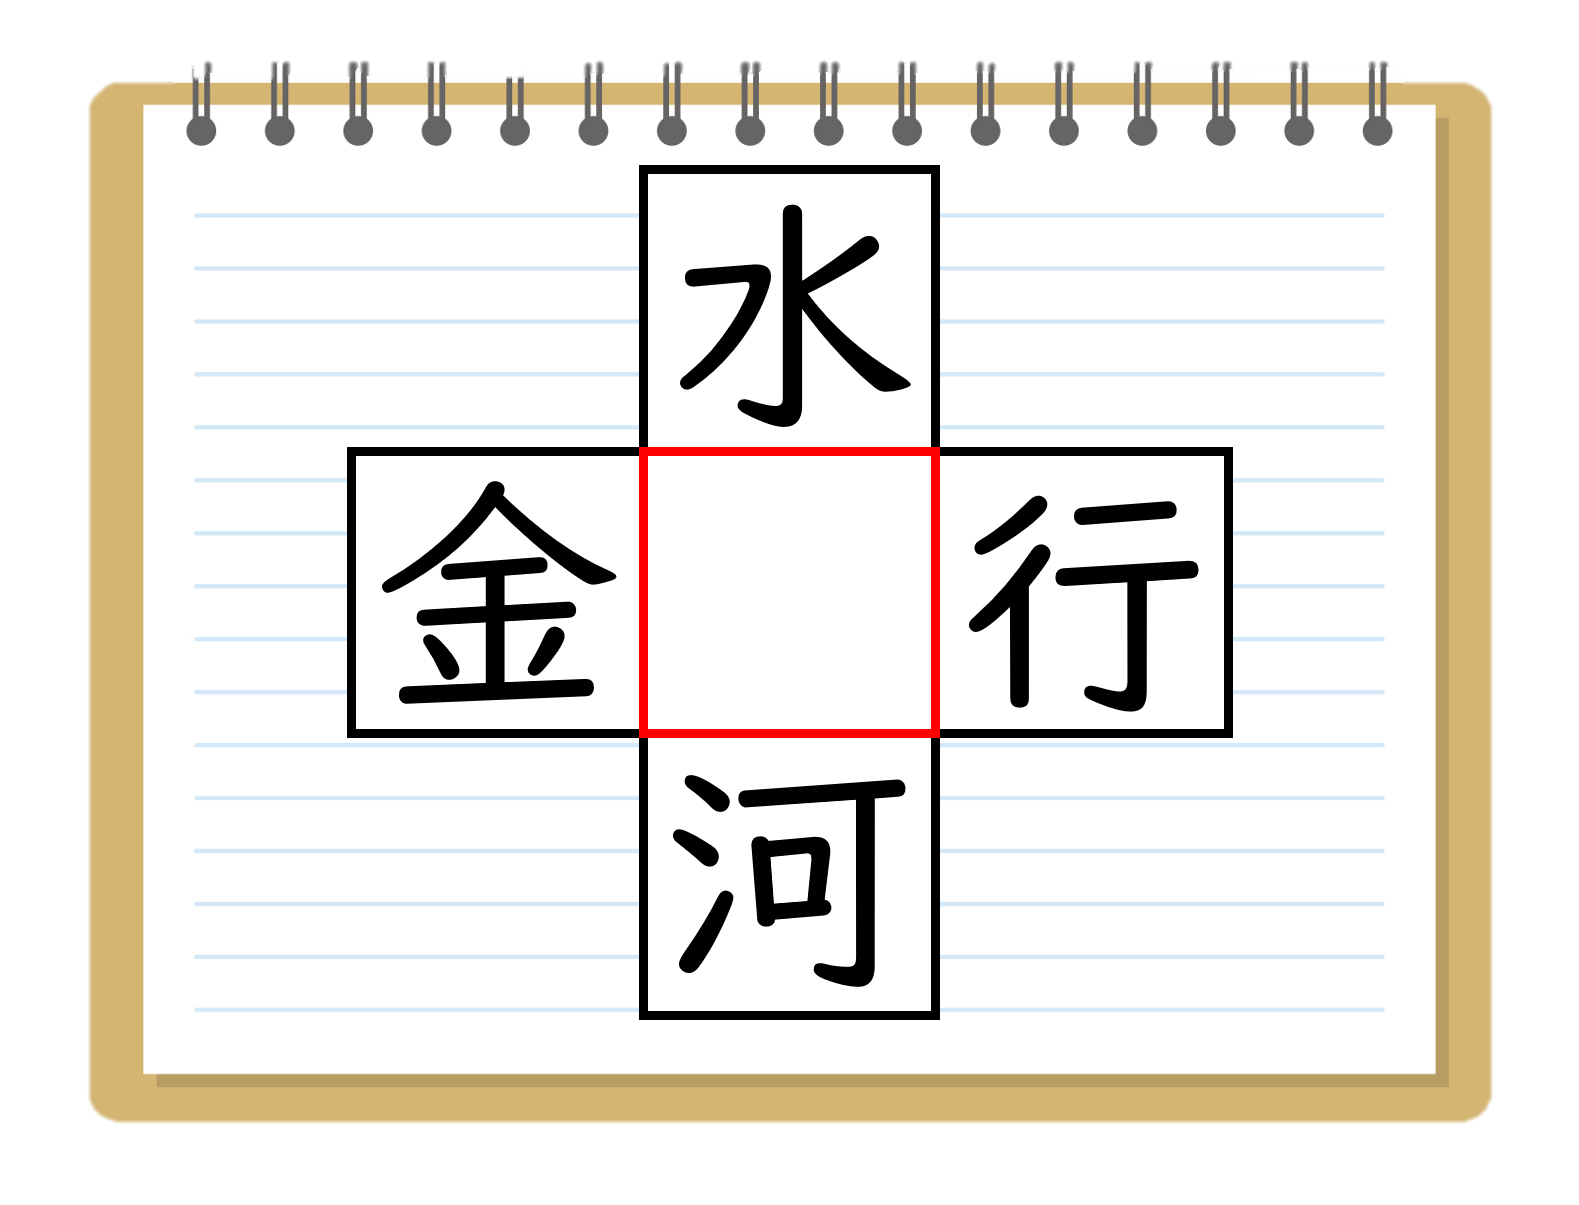 漢字穴埋めクイズ 全問 大人 高齢者向け 面白い虫食い問題 簡単クロスワード クイズ王国